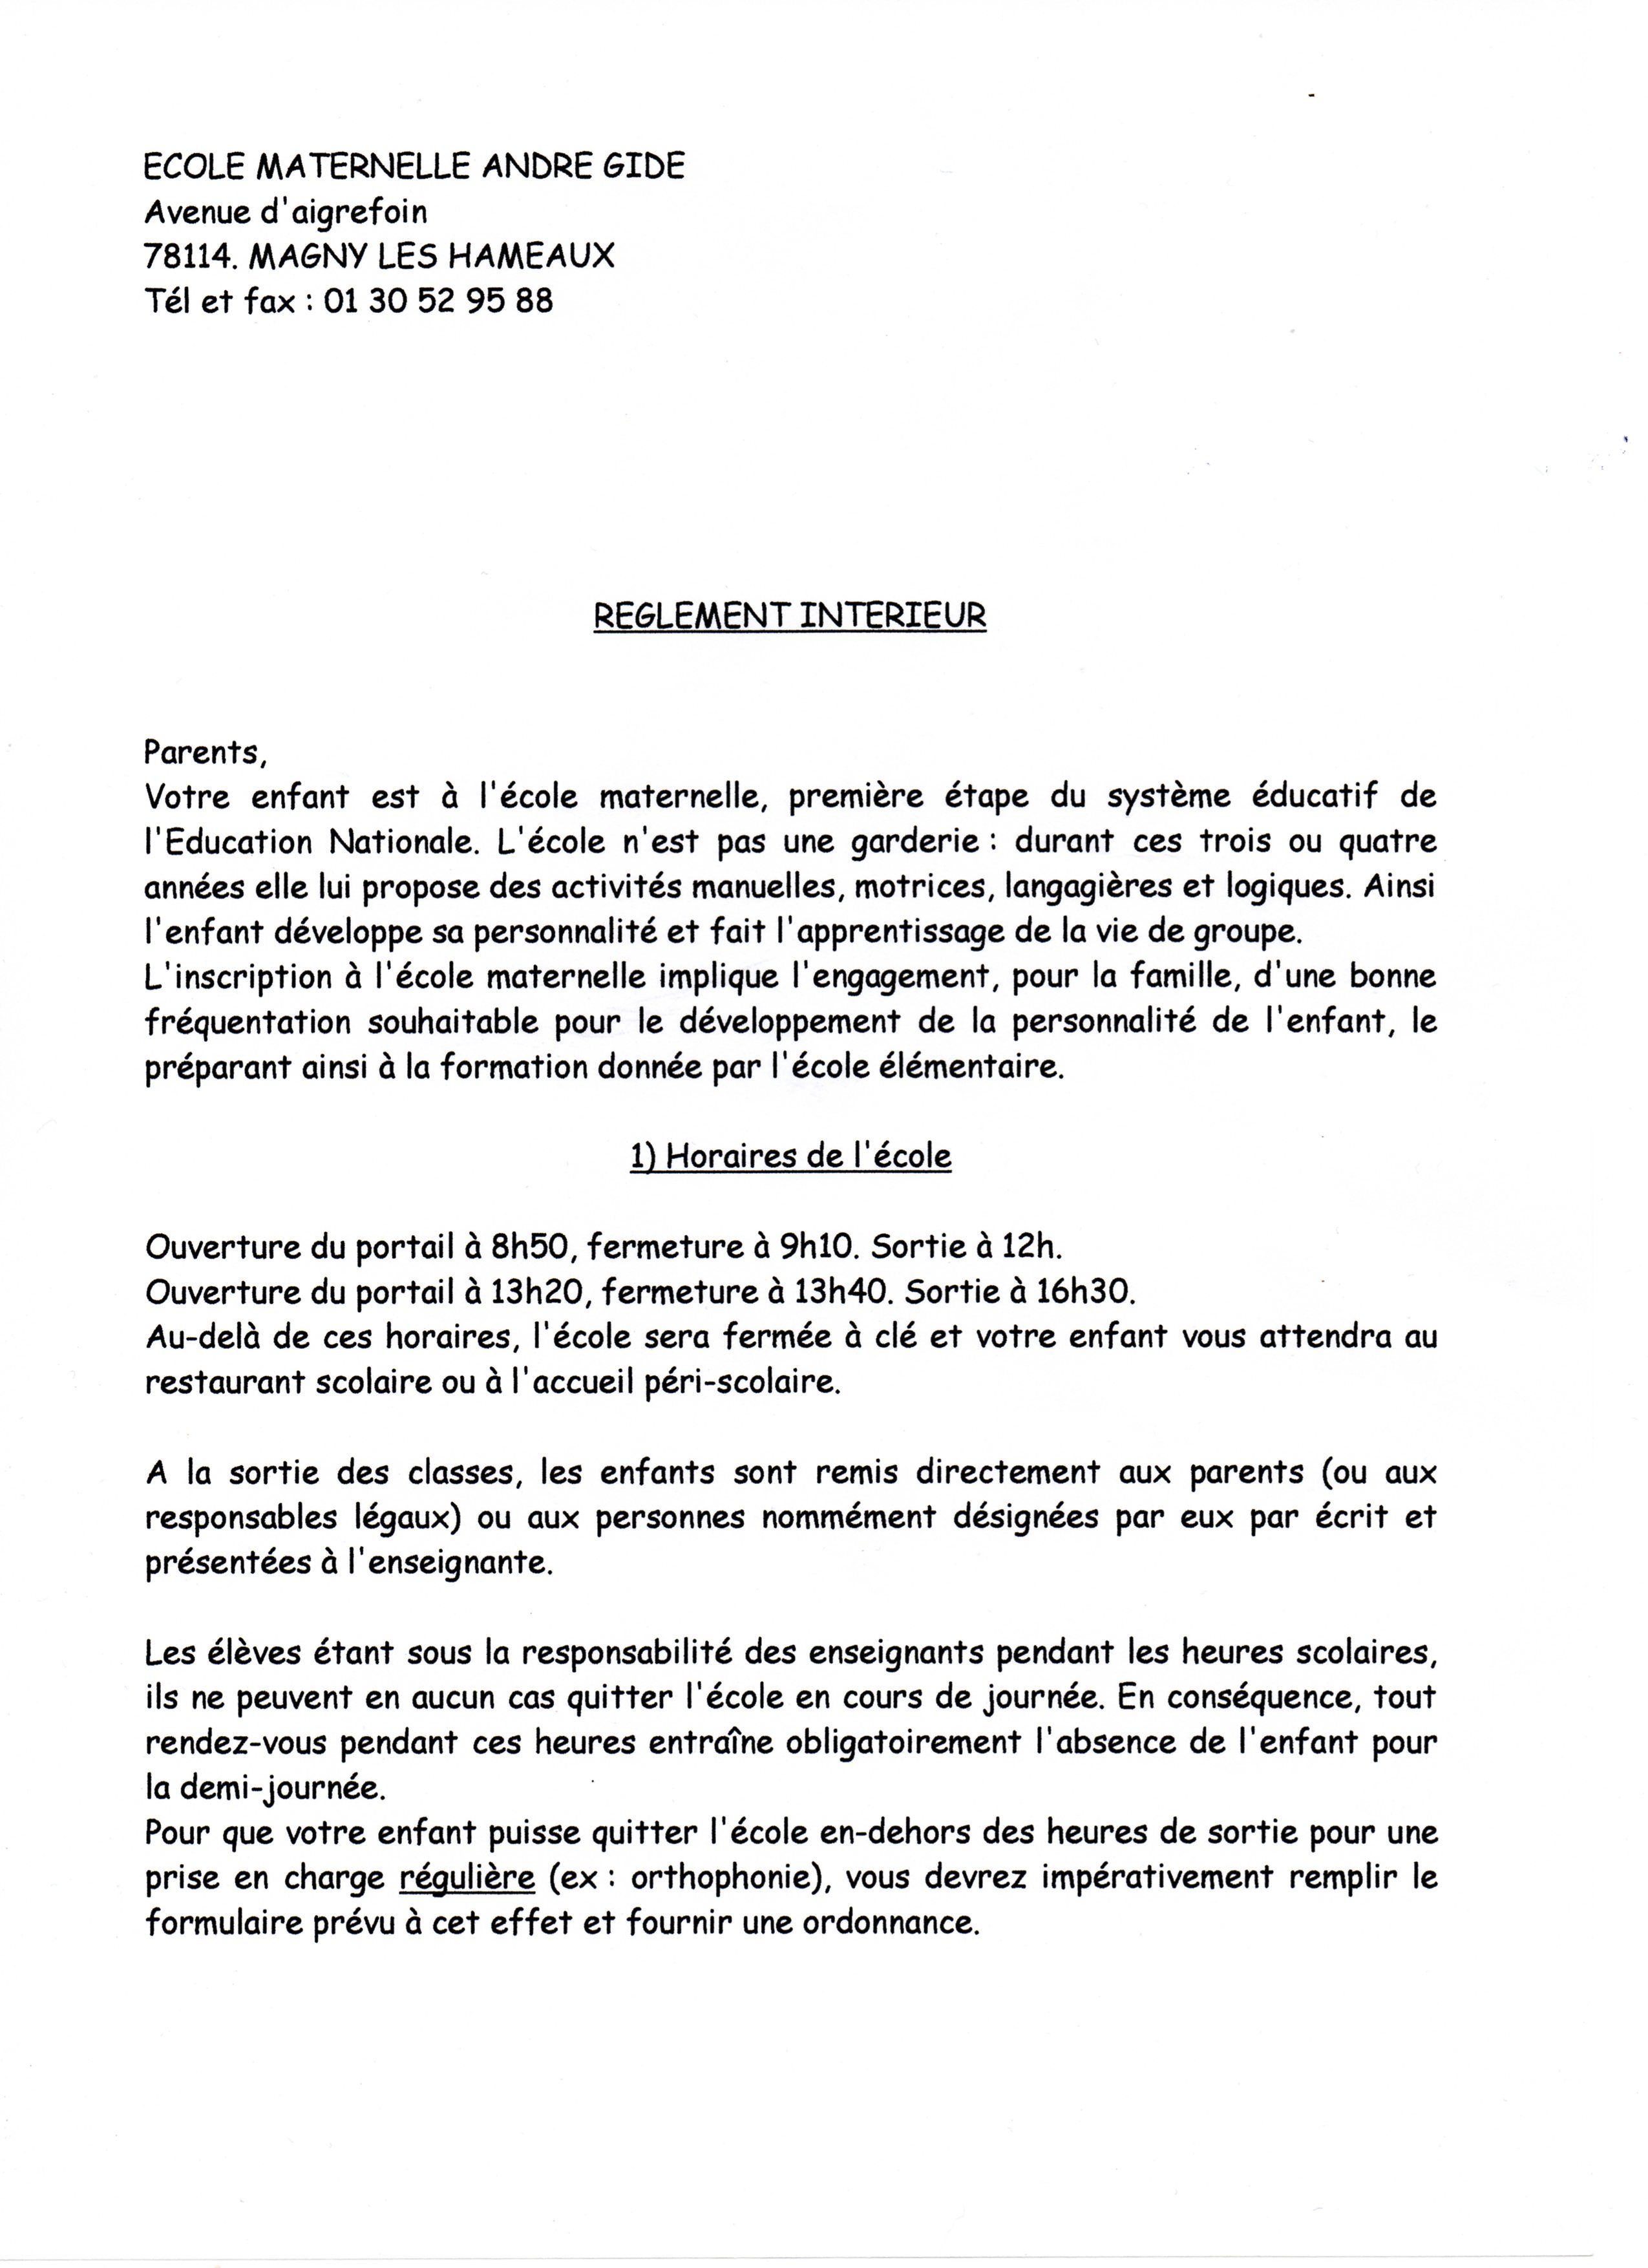 JPEG - 713.1 ko - page 1 règlement école - next picture